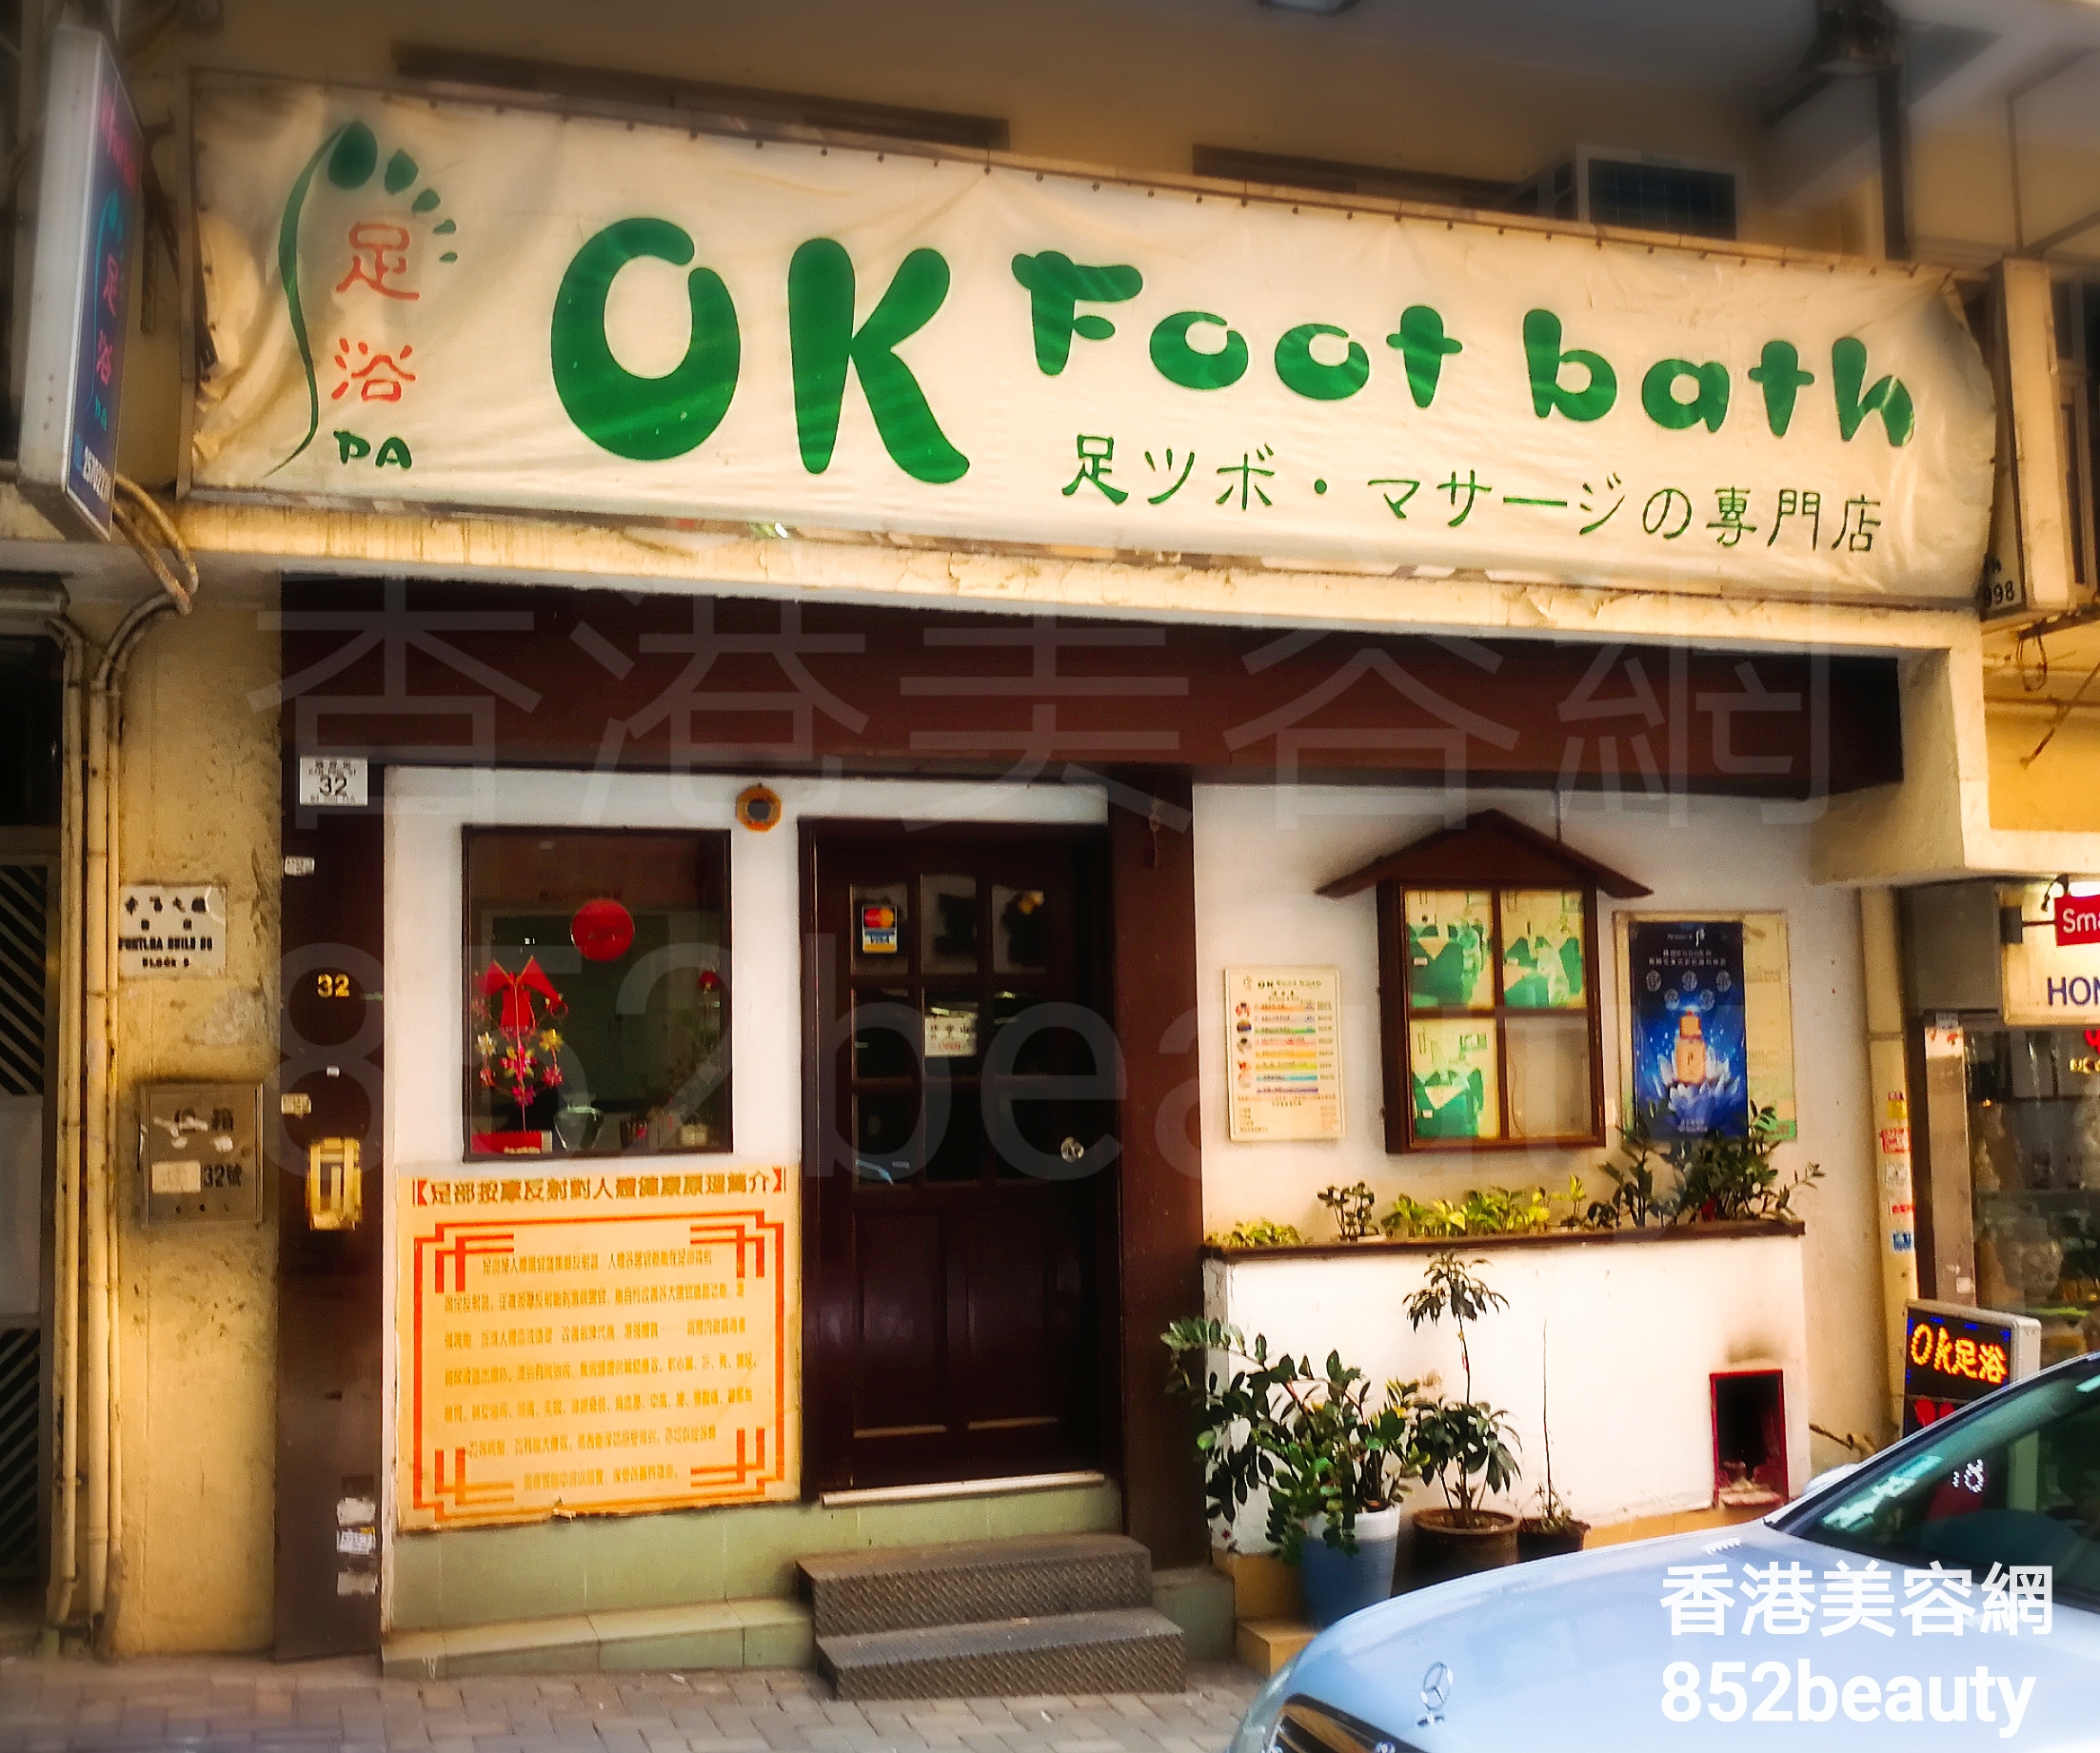 香港美容網 Hong Kong Beauty Salon 美容院 / 美容師: OK Foot bath